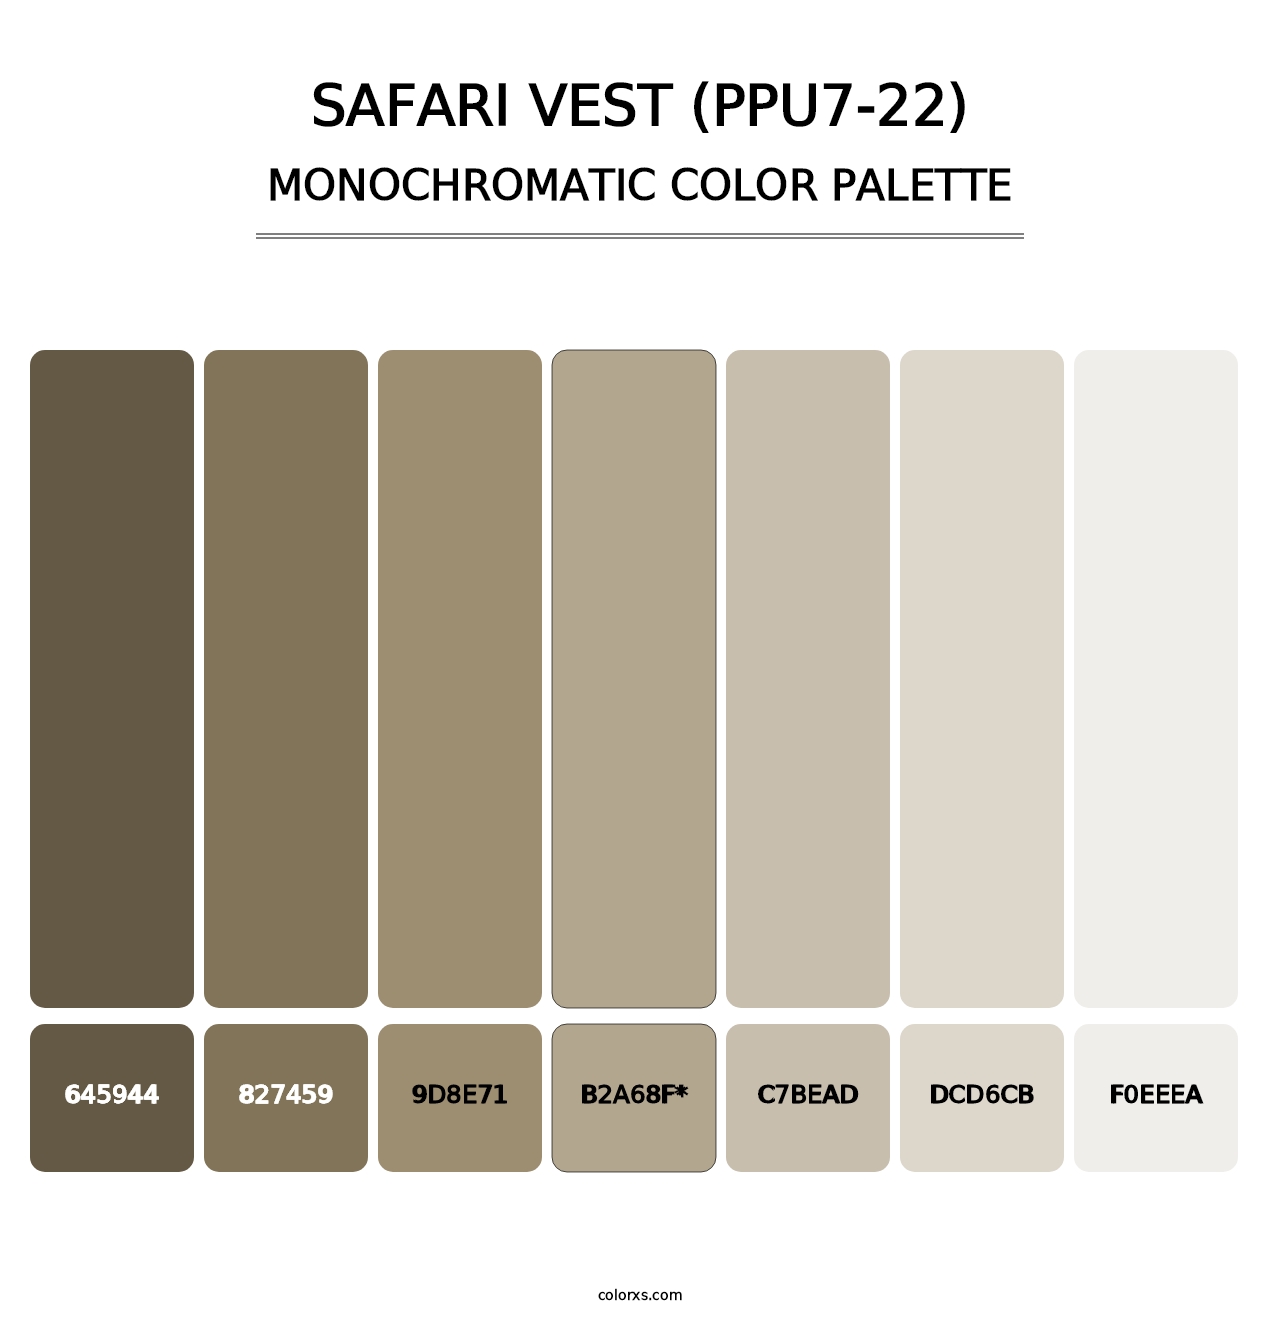 Safari Vest (PPU7-22) - Monochromatic Color Palette